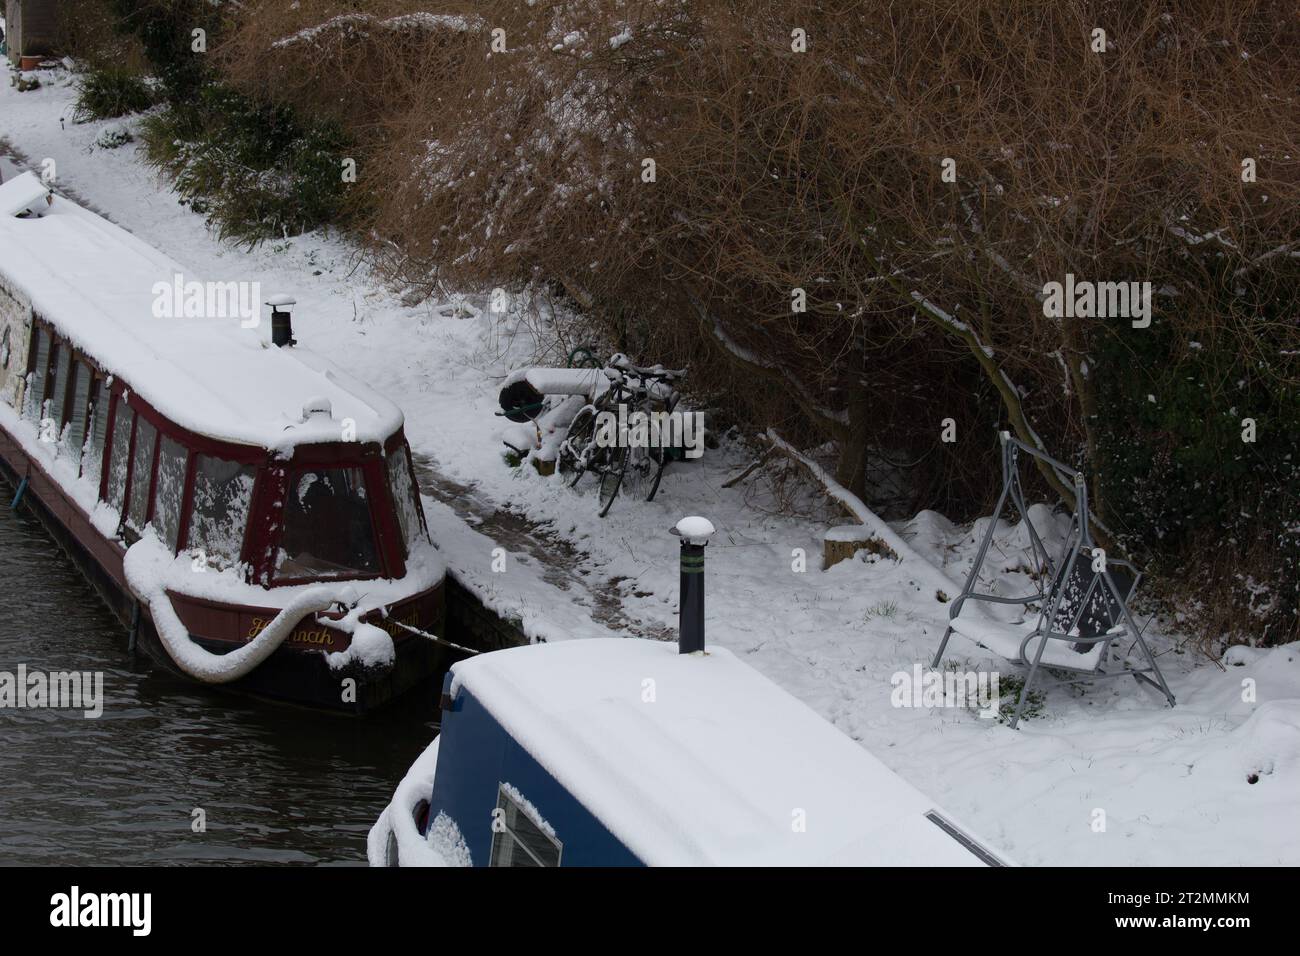 Bateau étroit ou bateau de canal dans la neige sur le canal Kennet et Avon à l'écluse d'Aldermaston. Fait partie de la communauté de croisière continue. Banque D'Images